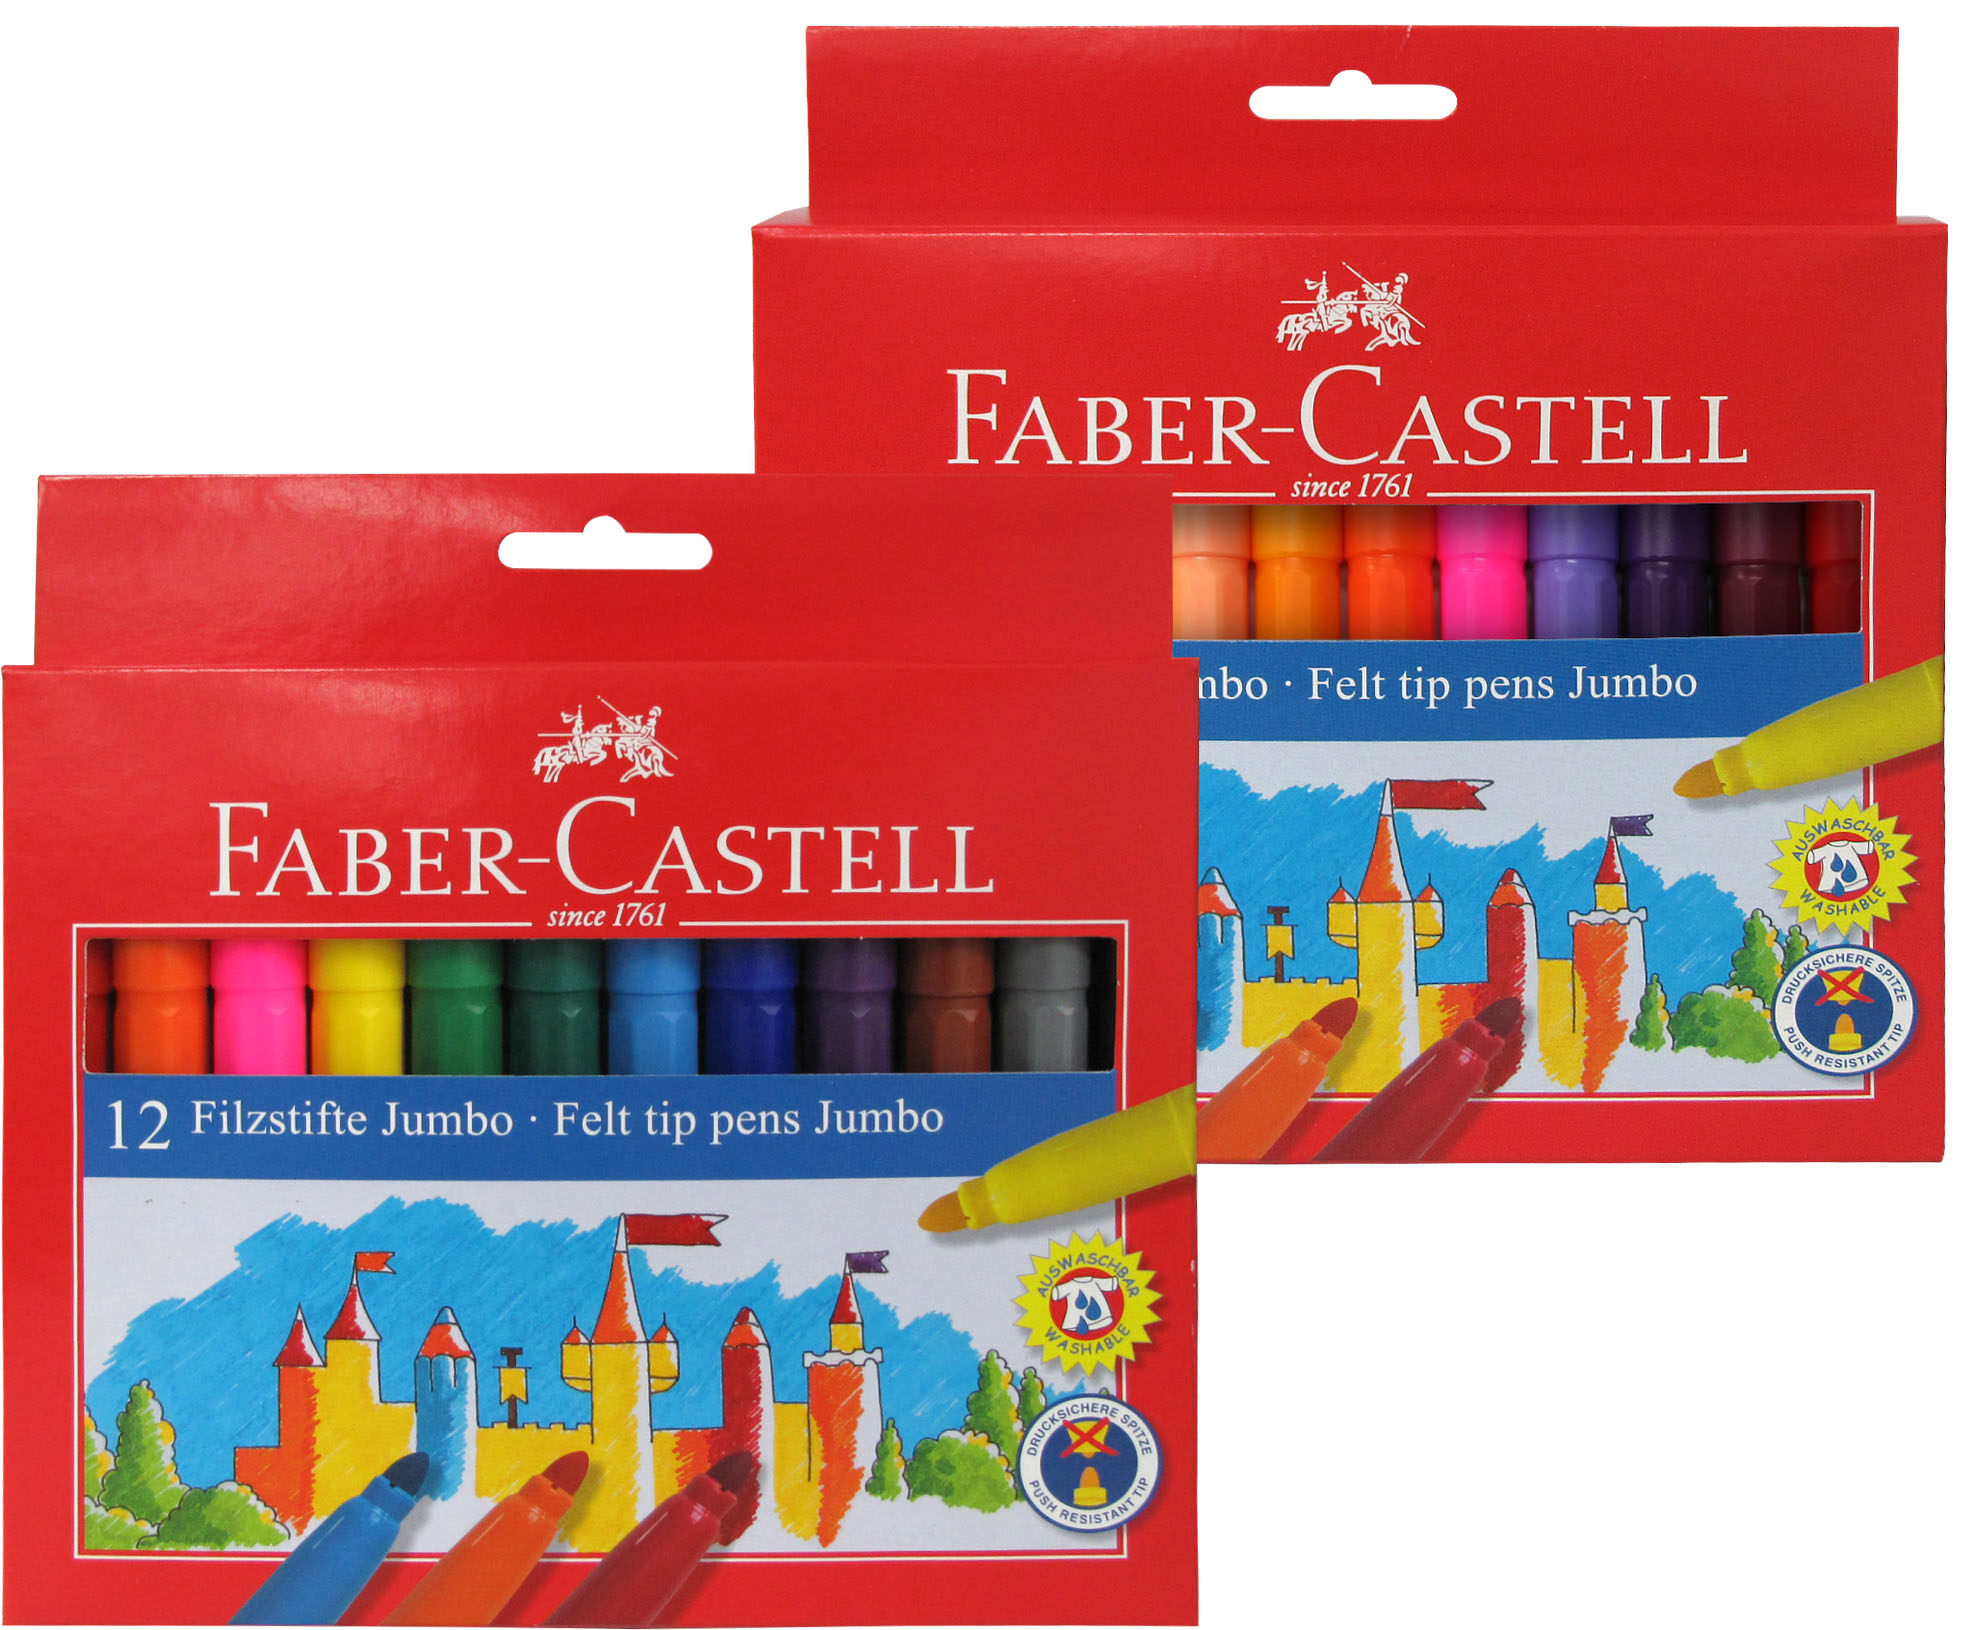 Faber-Castell estuche con 12 rotuladores escolares tamaño Jumbo